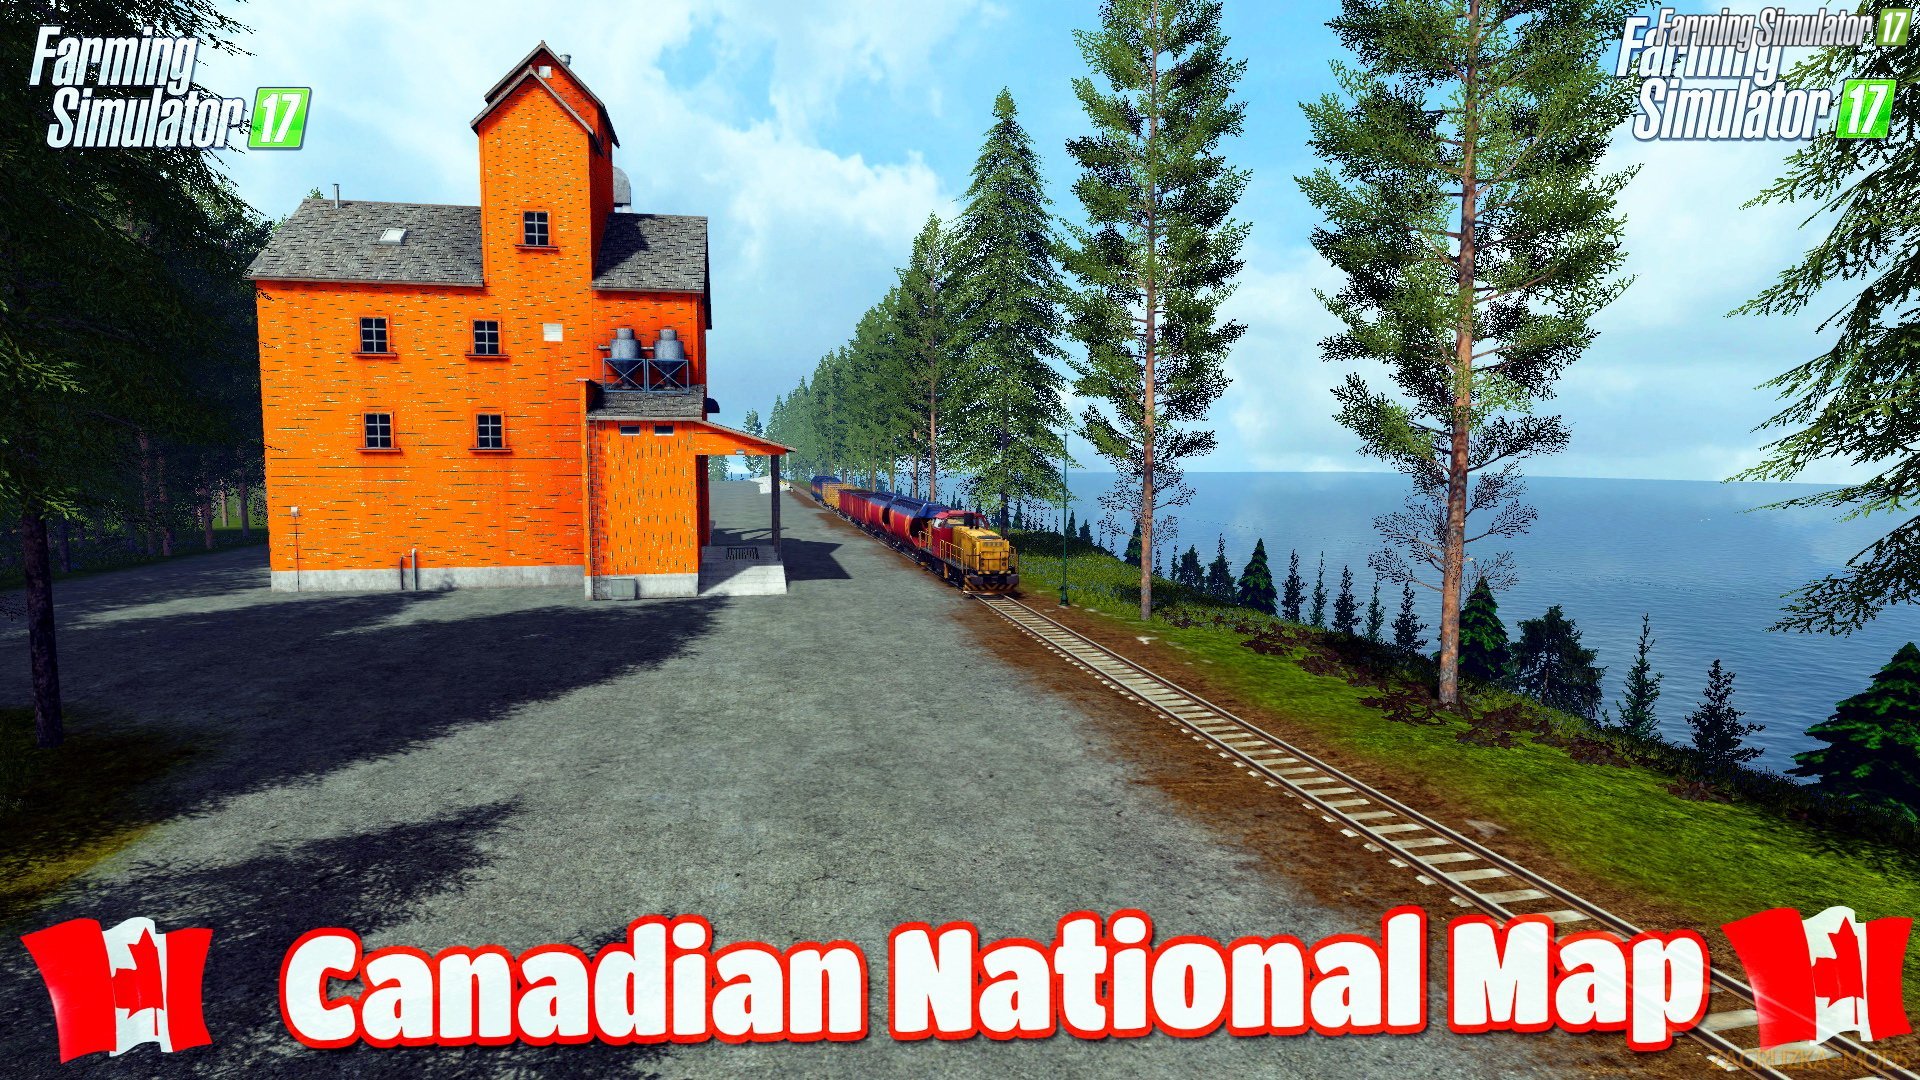 Canadian National Map v7.1 for FS 17